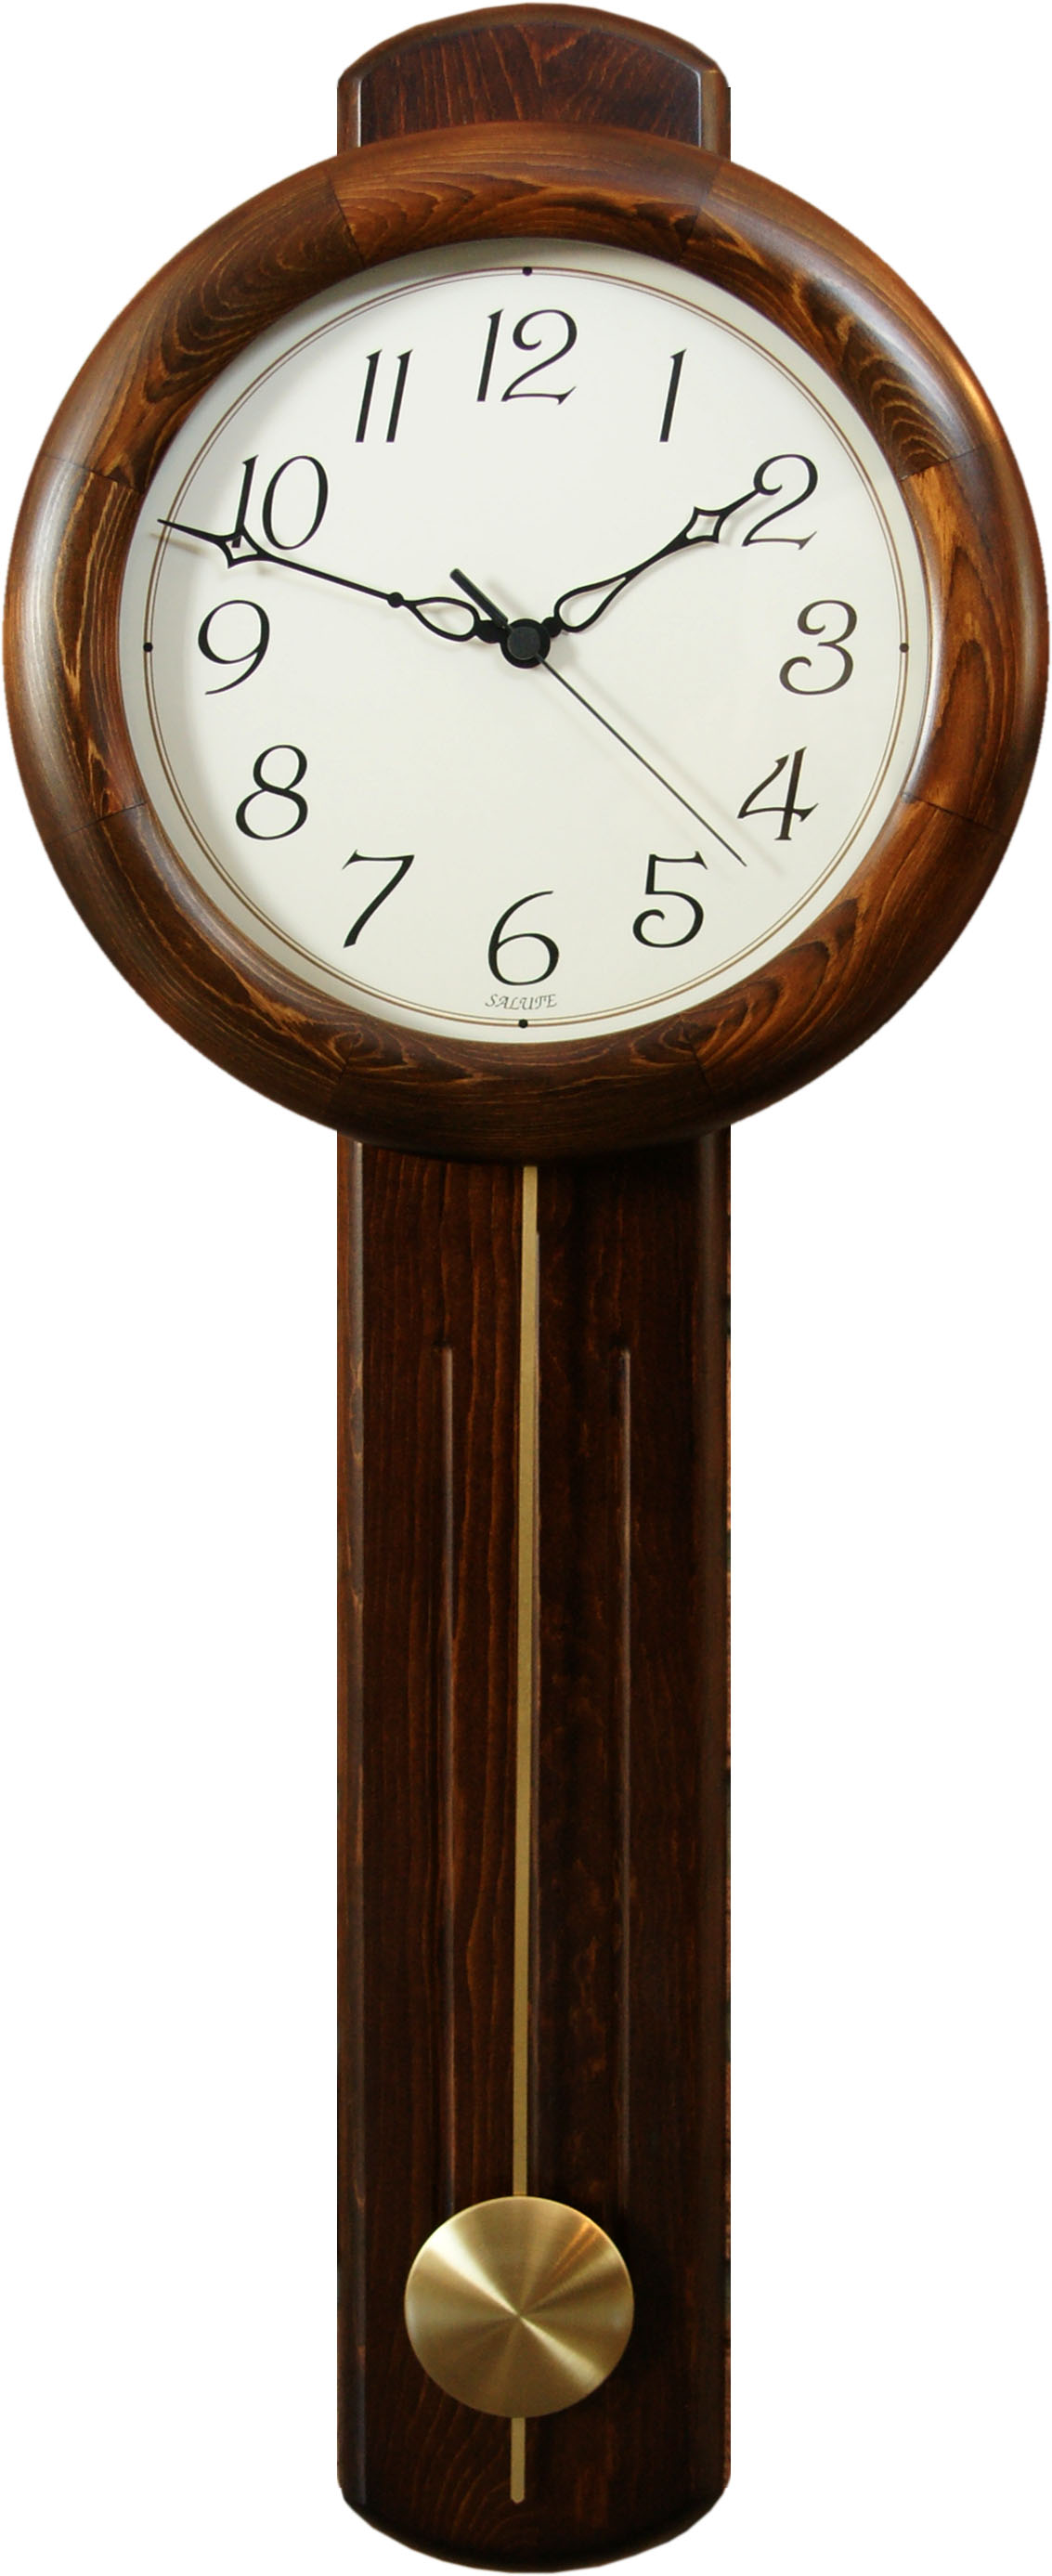 Настенные часы с маятником недорого. Часы Hermle настенные с маятником. Часы кварцевые настенные Salute с маятником ДС-1мб7-803. Настенные часы с маятником Дельта кварц. Часы Lulu настенные с маятником.